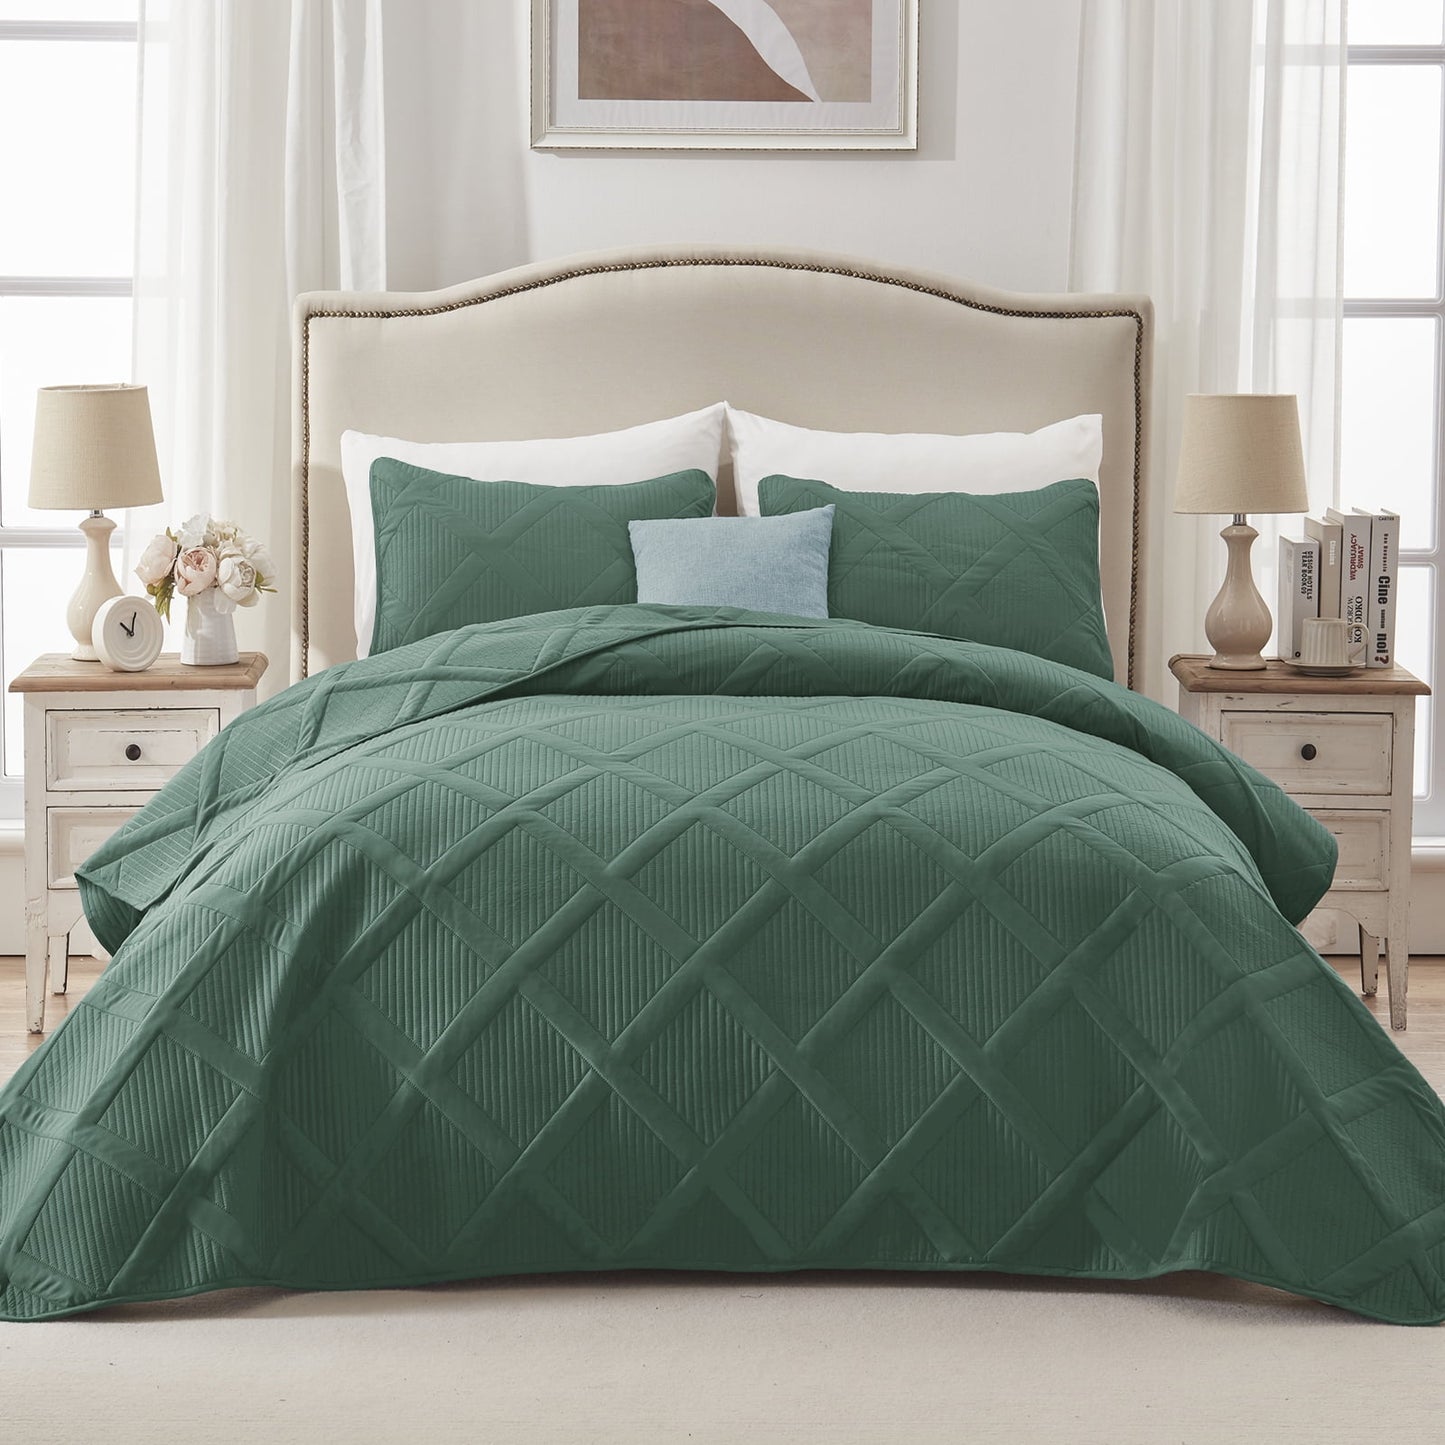 Exclusivo Mezcla Ultrasonic Full Queen Quilt Set, Lightweight Bedspreads Modern Striped Coverlet with 2 Pillow Shams, Green